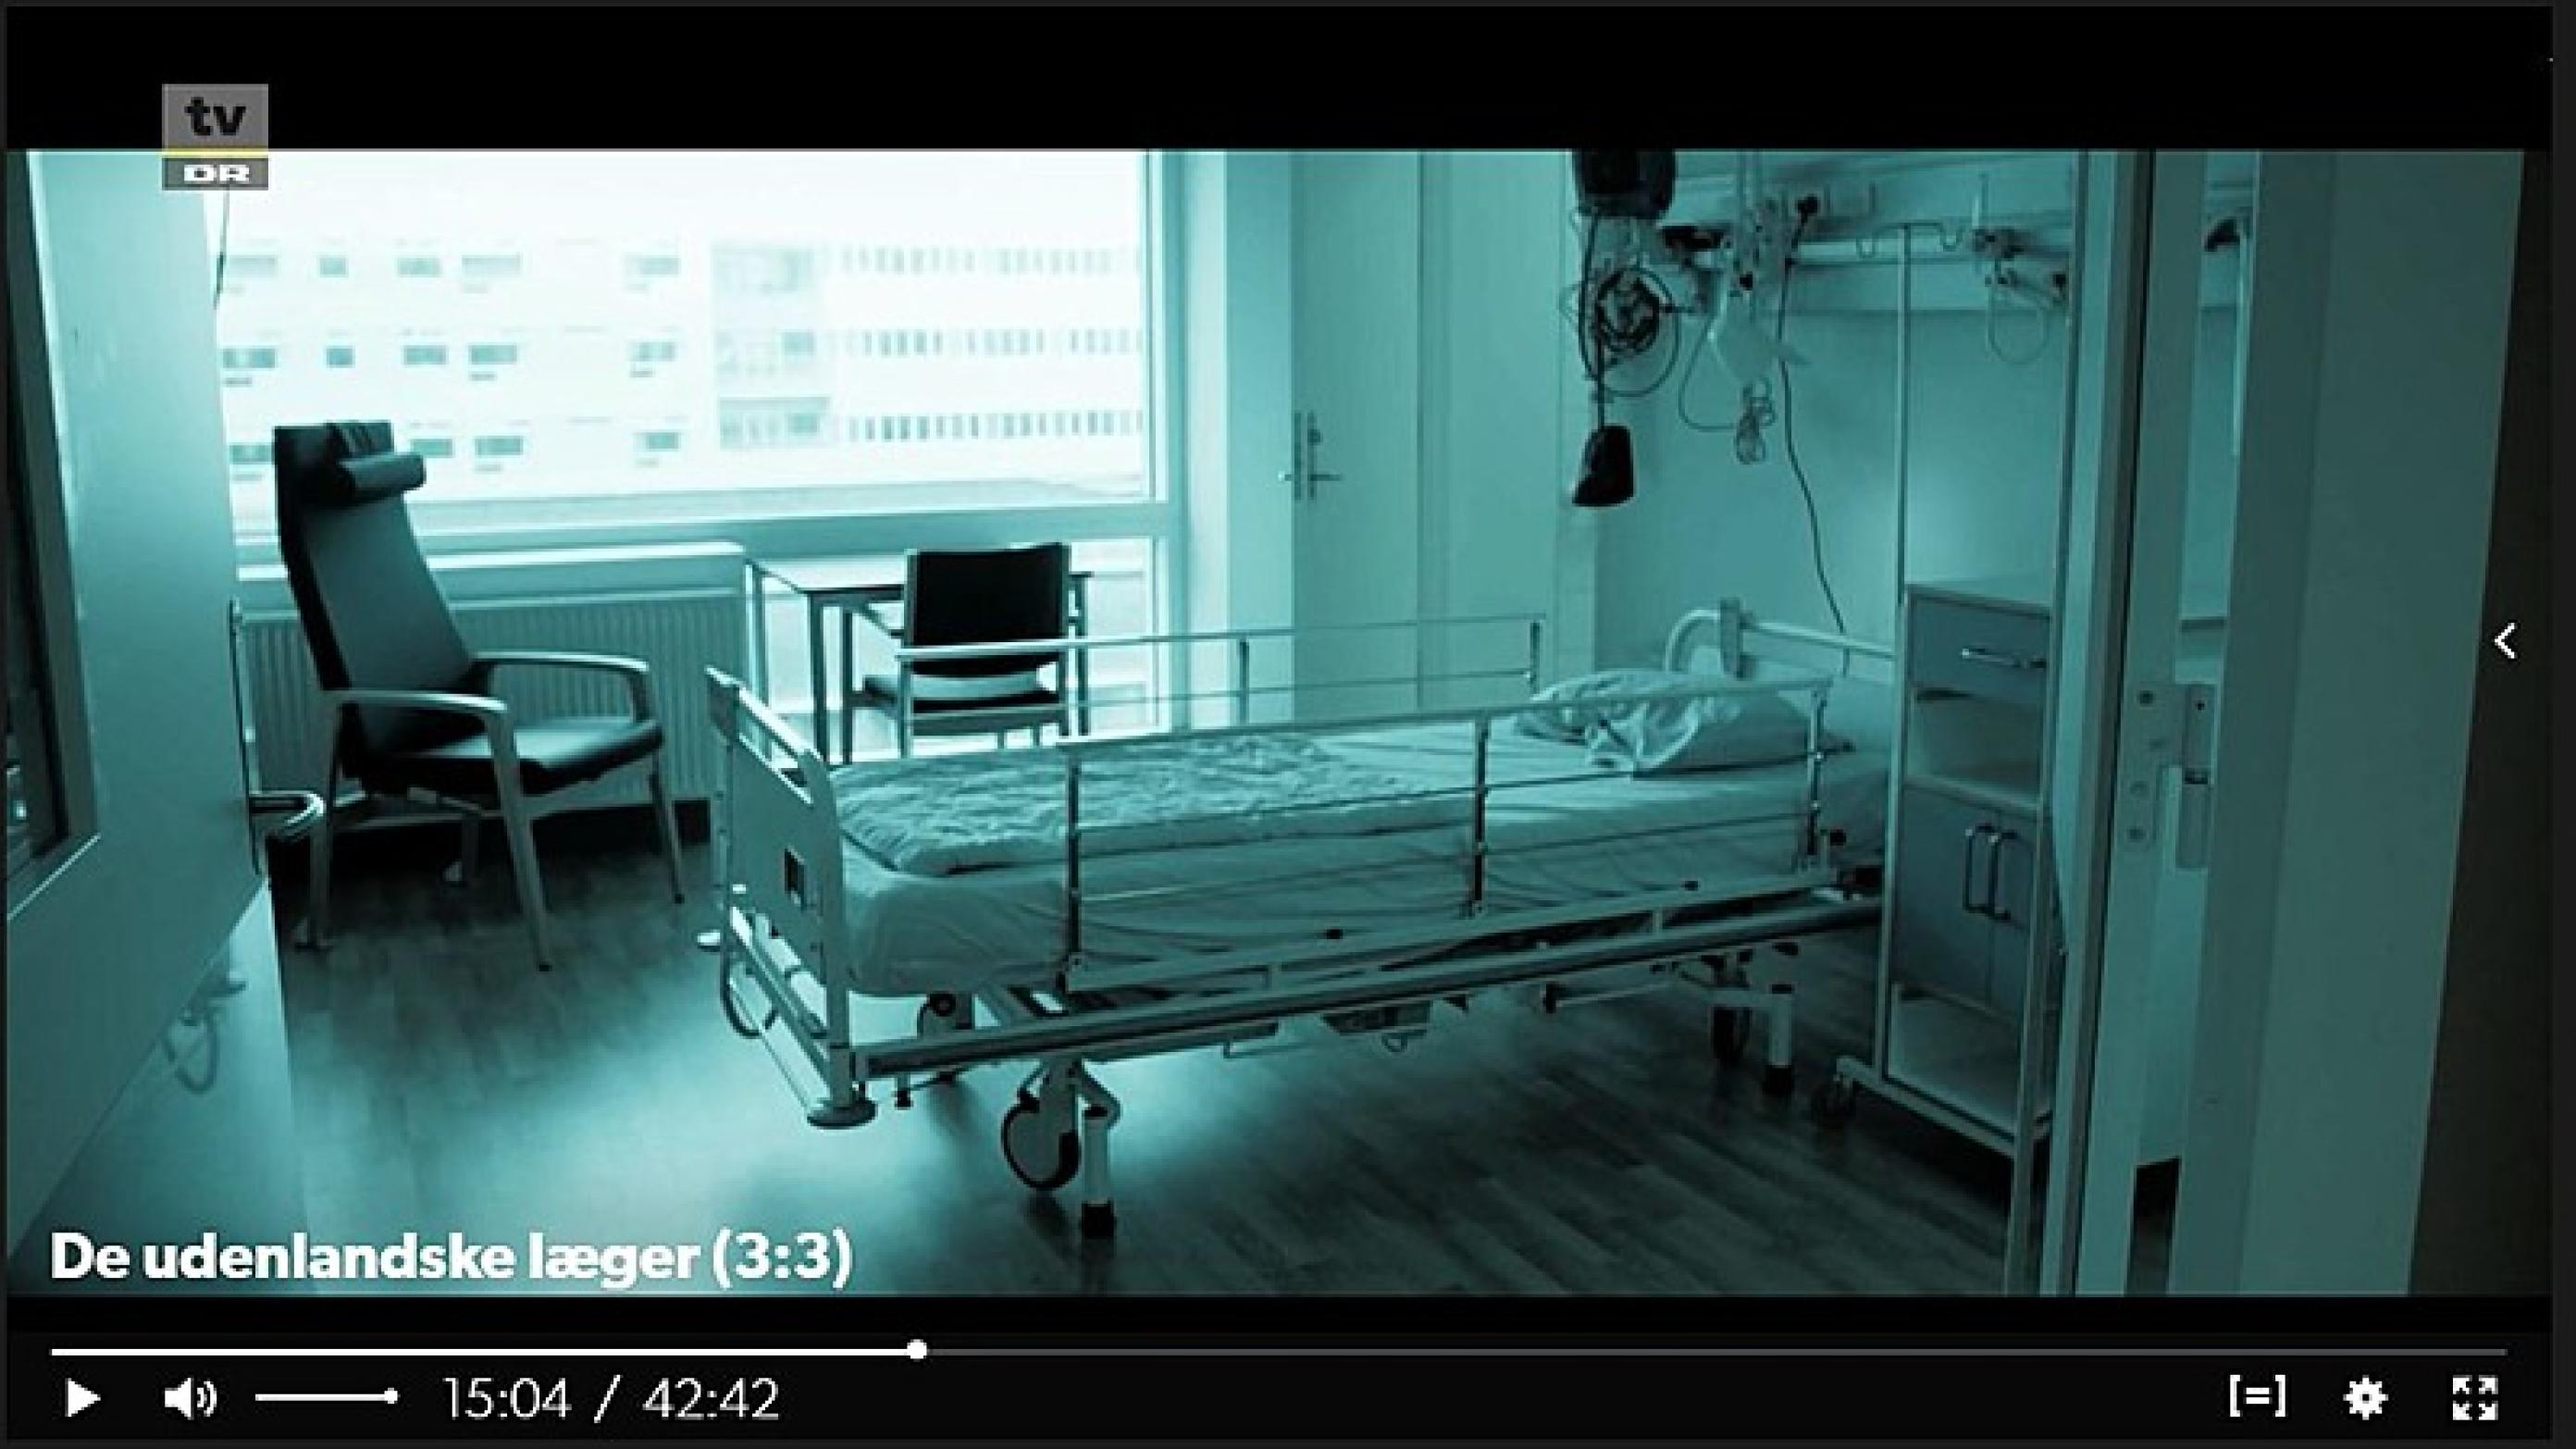 Skærmbillede fra DR Dokumentaren "De udenlandske læger", DR.dk